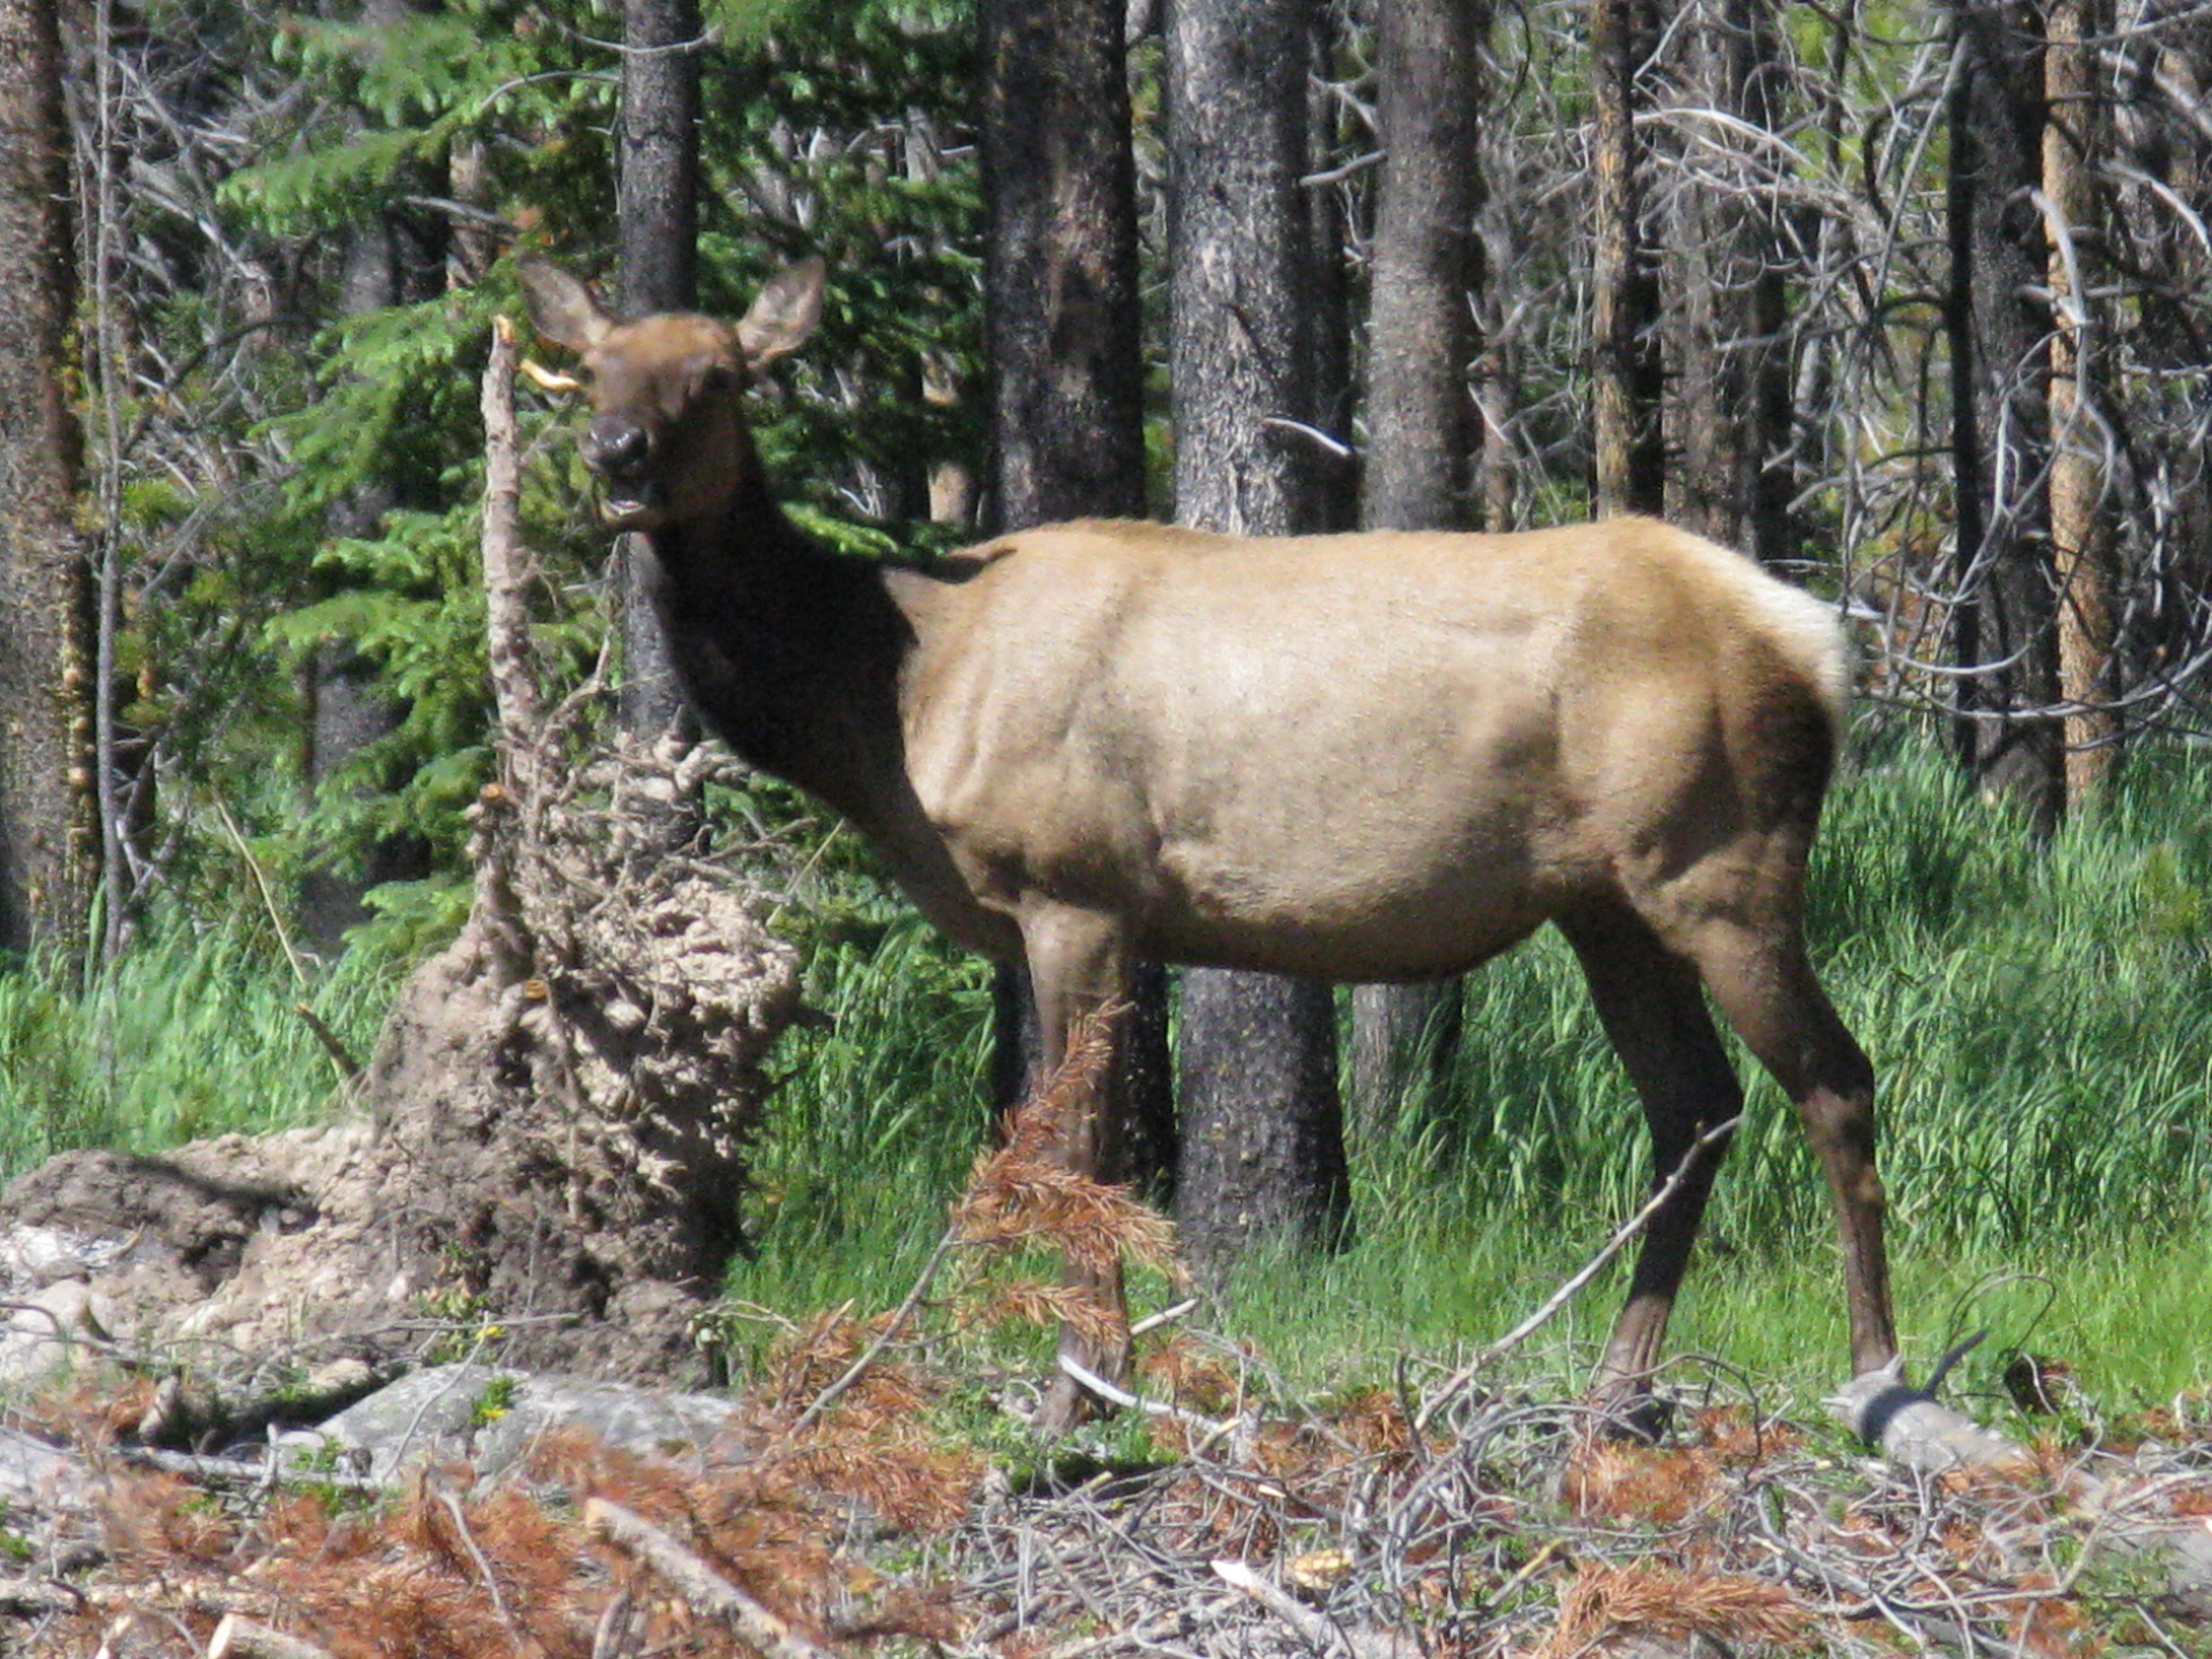 female elk antlers